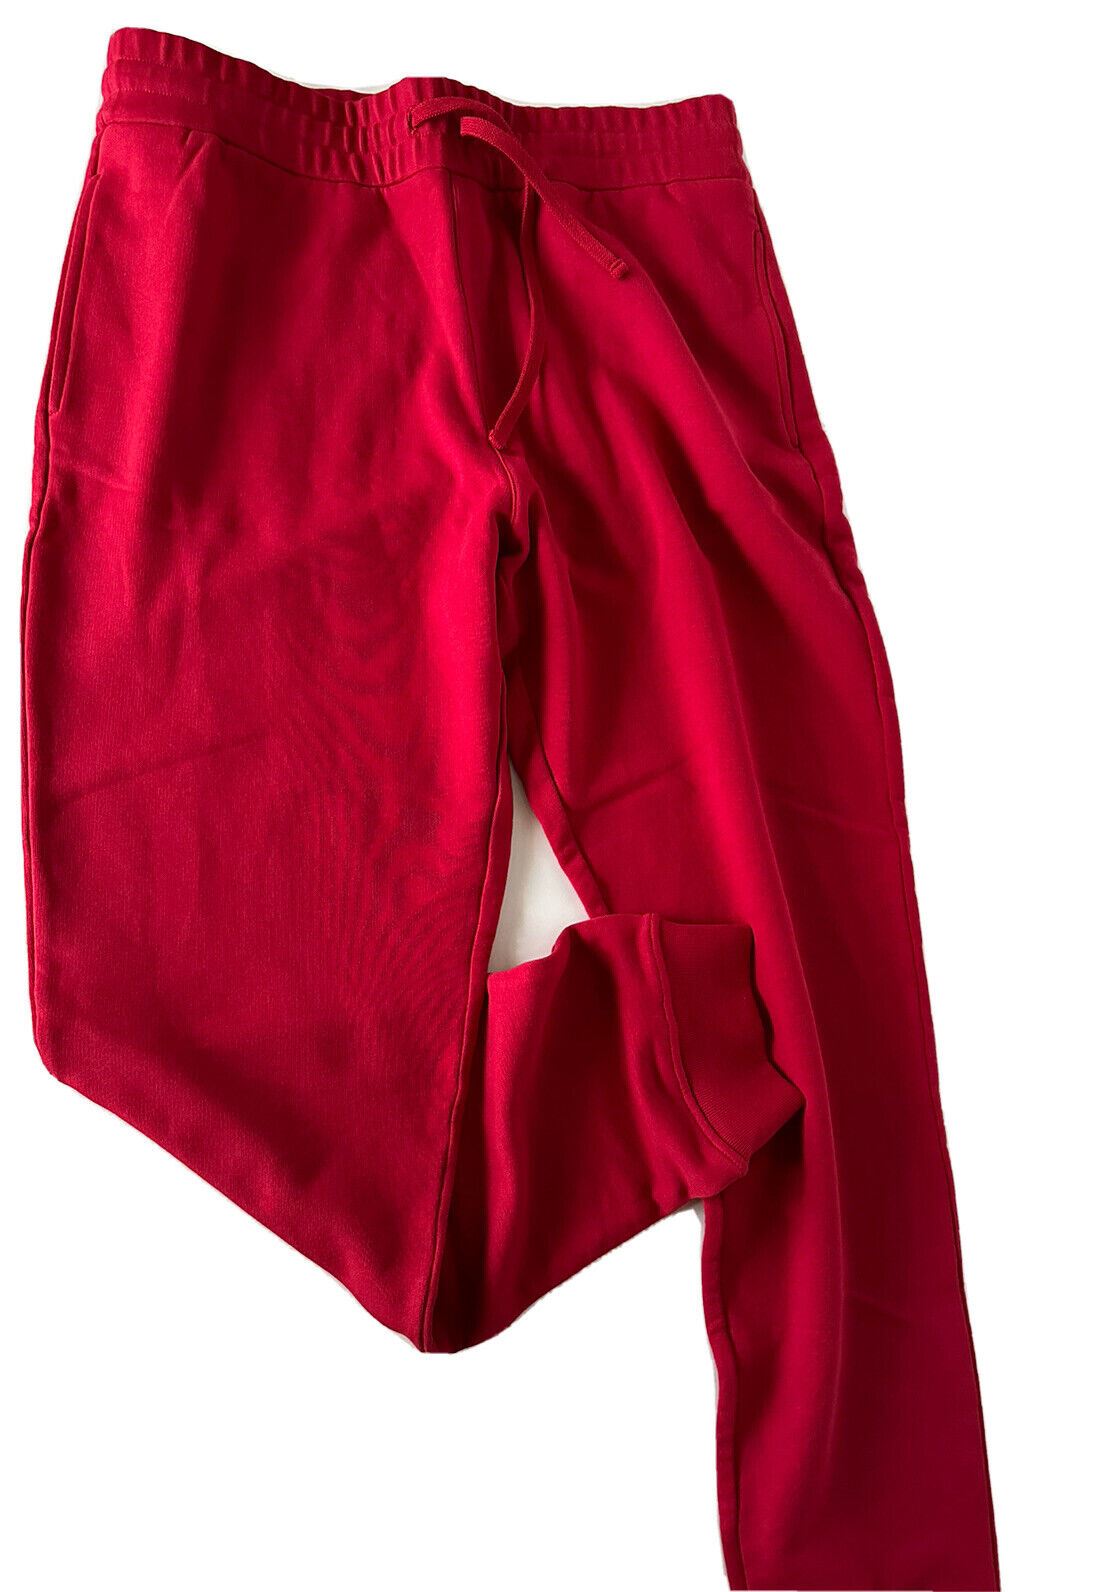 Neu mit Etikett: 650 $ Versace Herren-Hose mit Medusa-Logo, Rot, Größe 3XL A89515S 